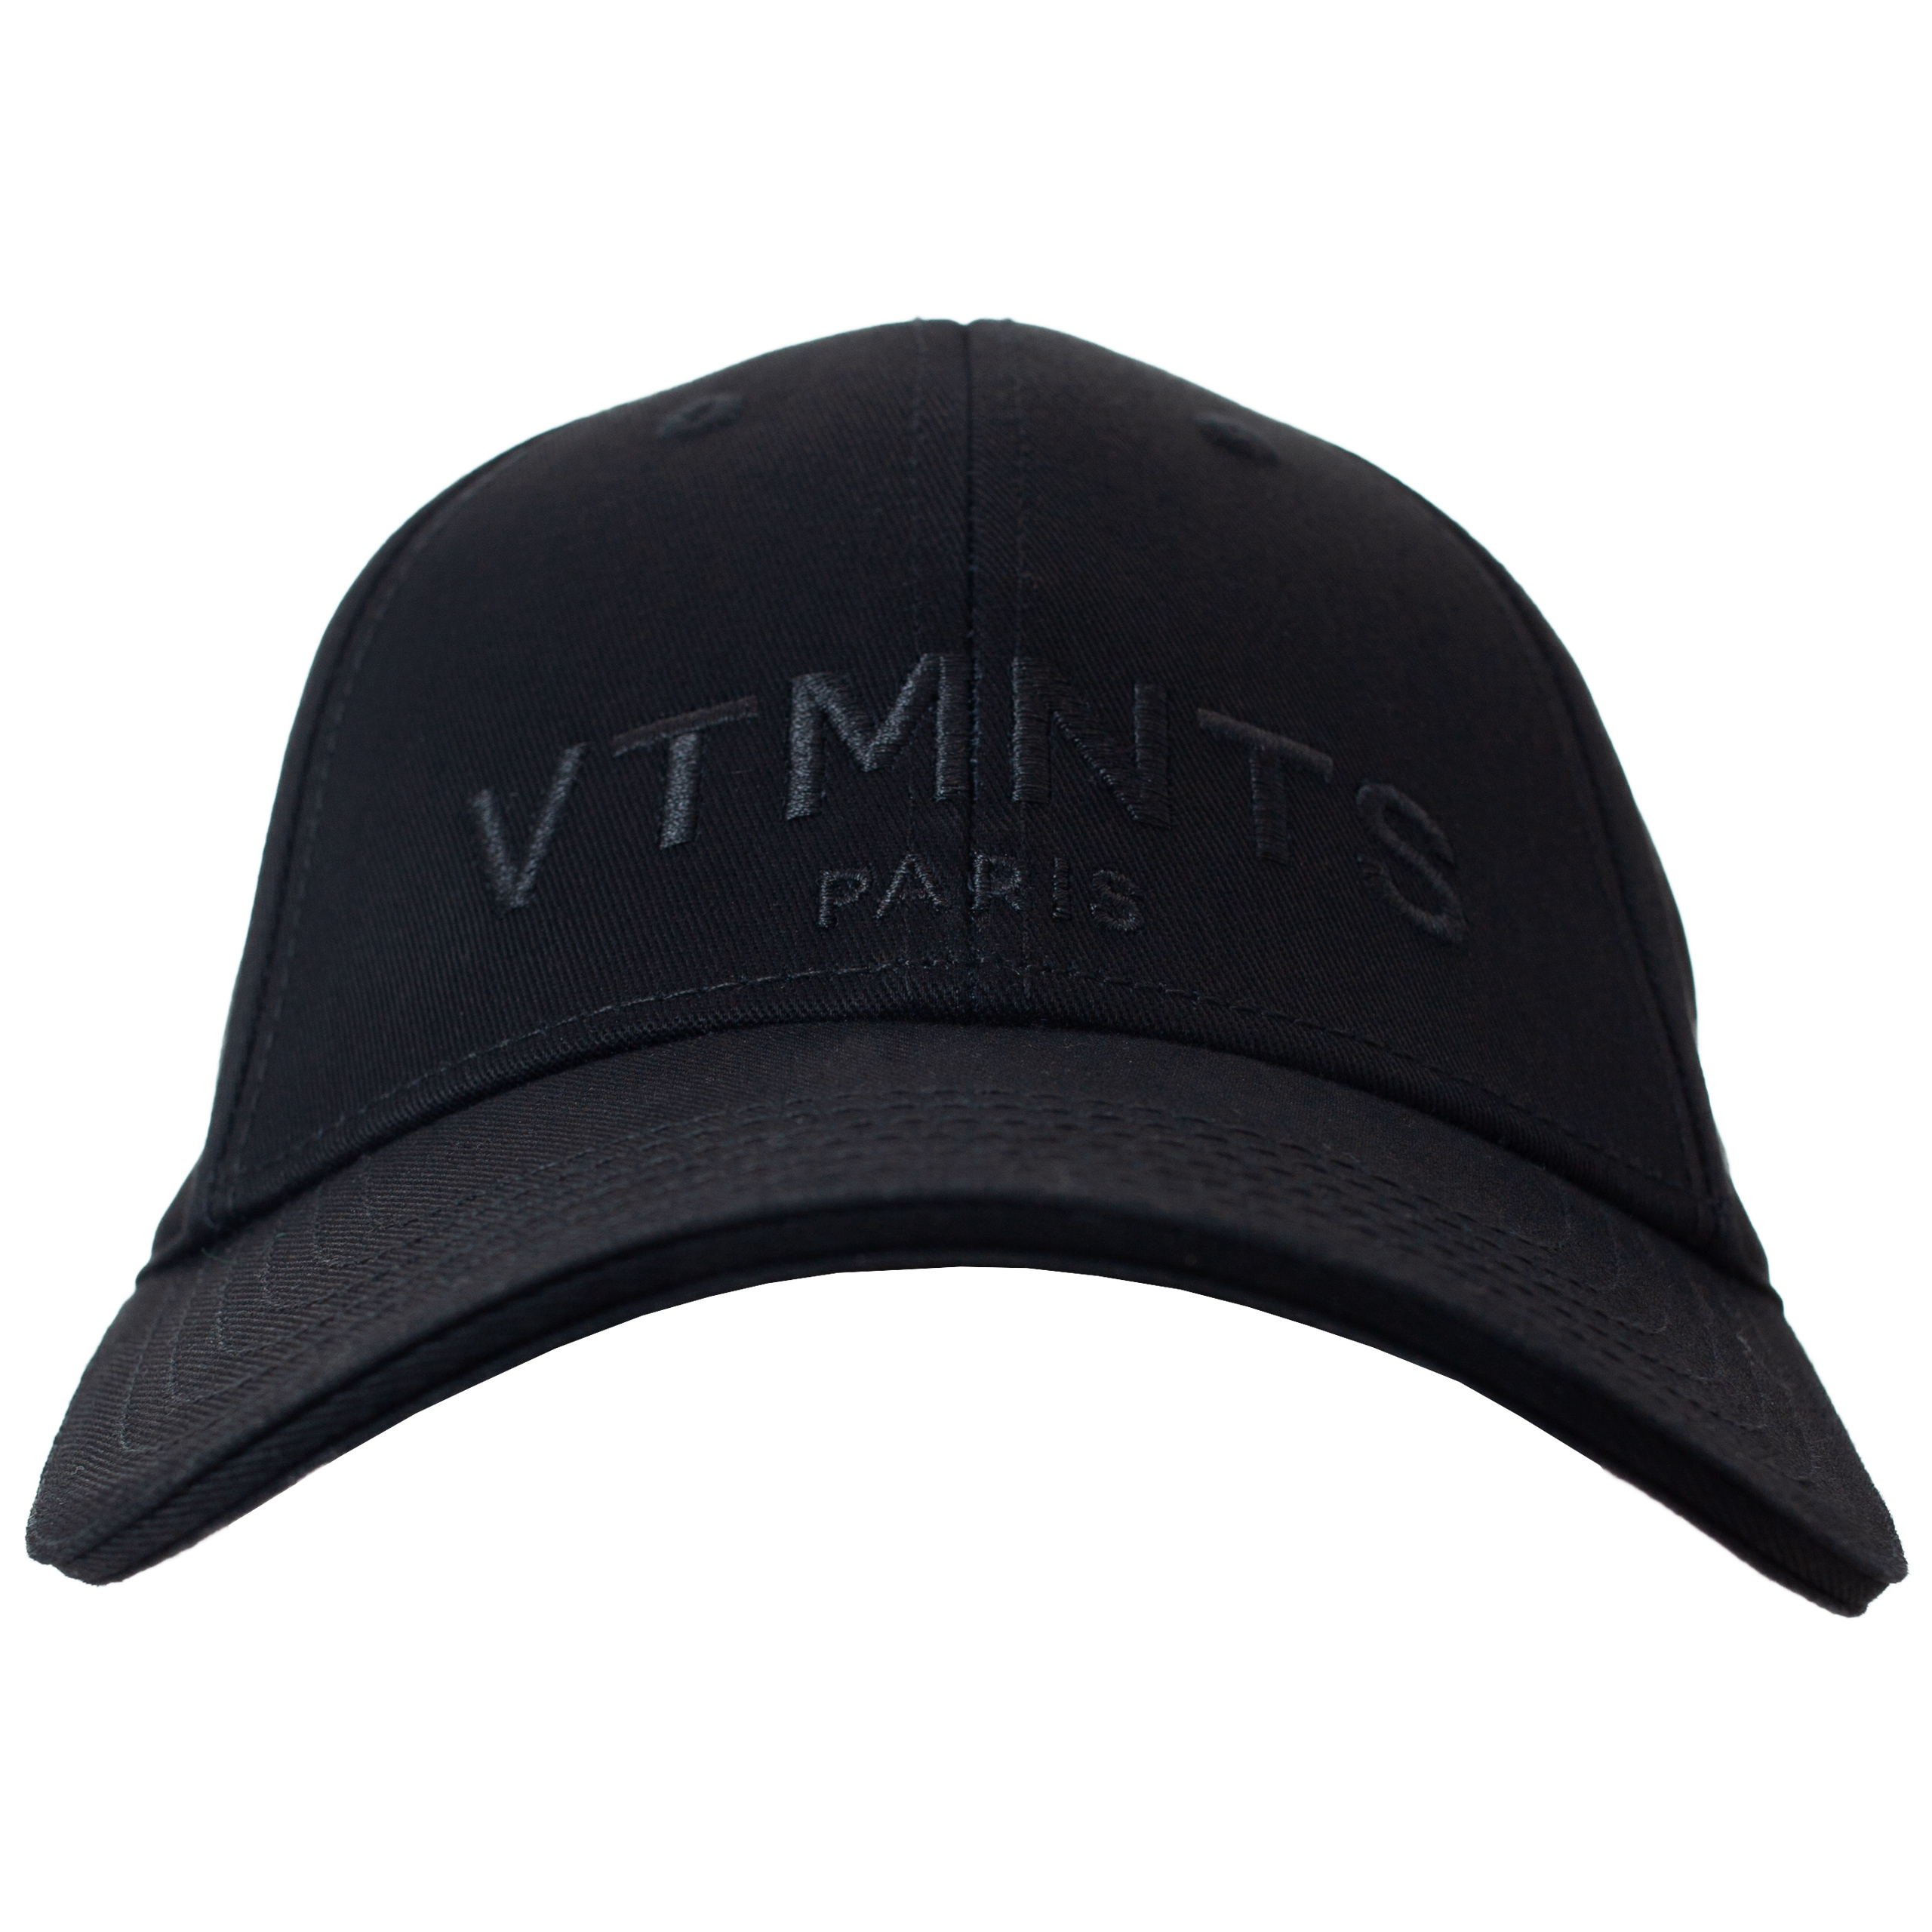 Черная кепка с вышивкой логотипа VTMNTS VL18CA100B/1052, размер One Size